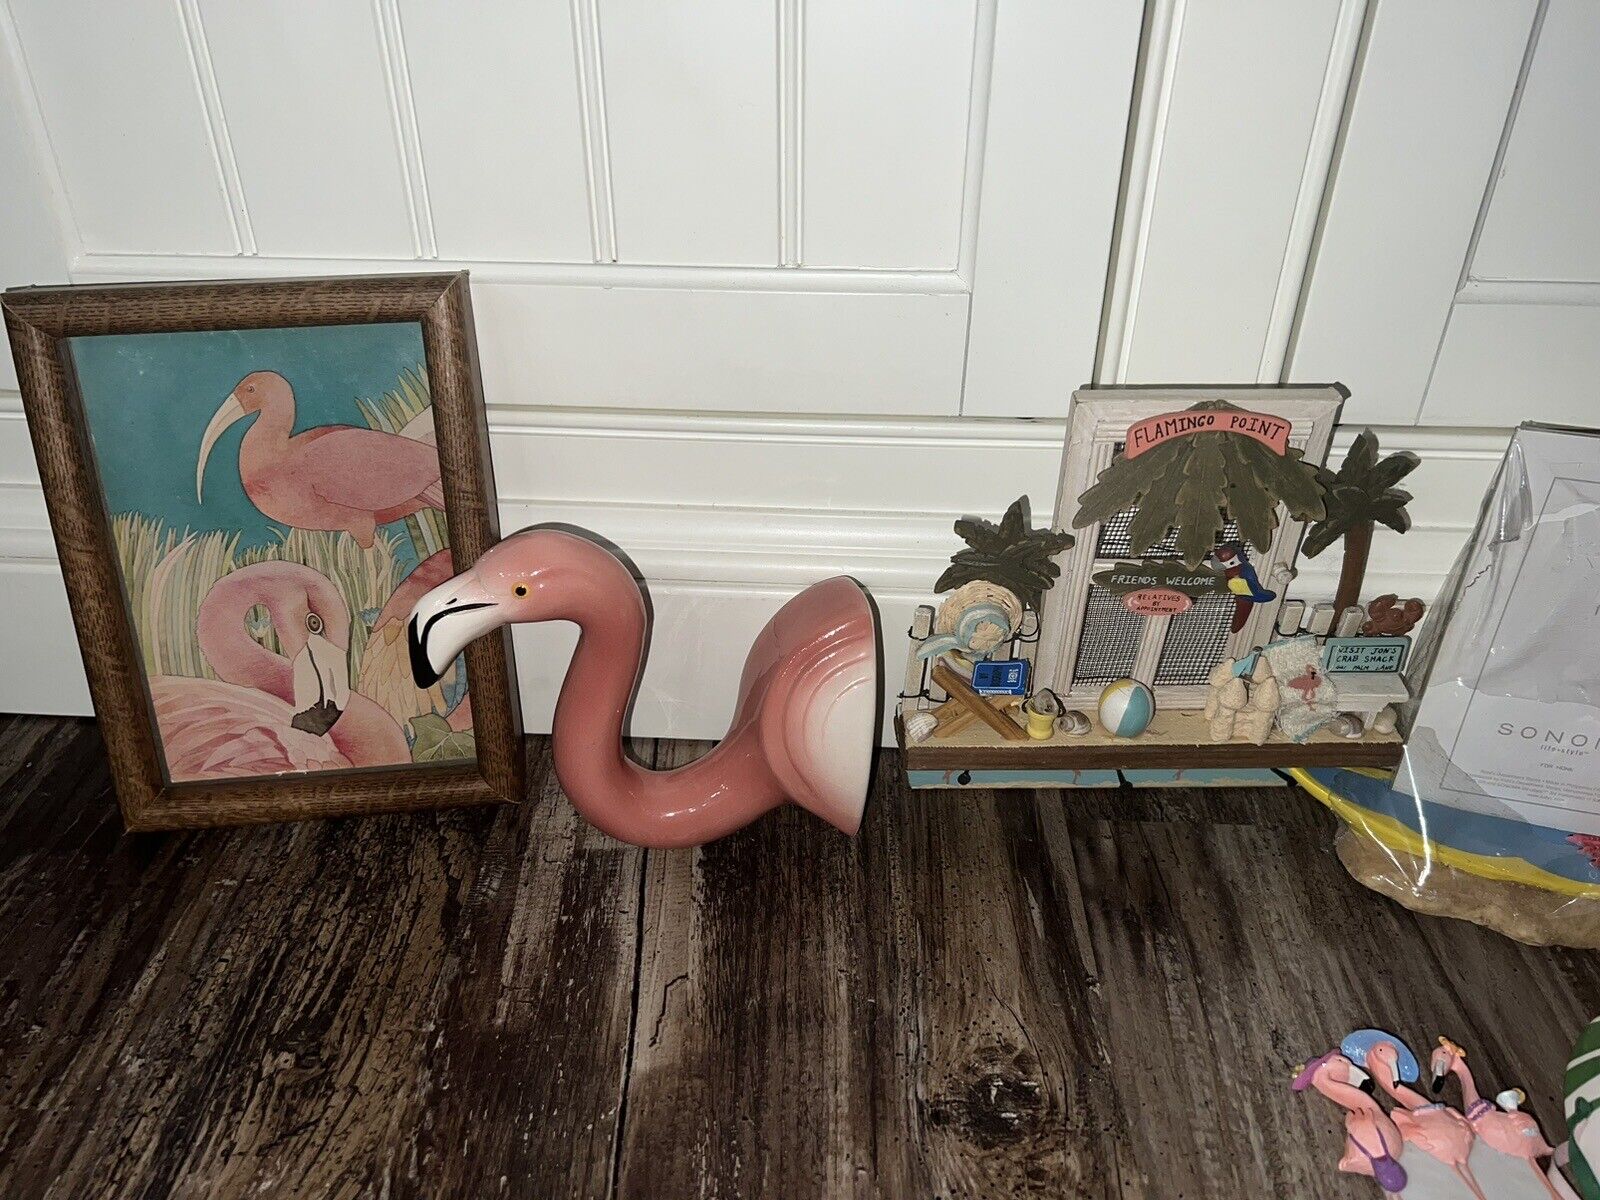 flamingo bedroom bathroom decor bundle lot vintage Wholesale Boston Warehouse - фотография #9